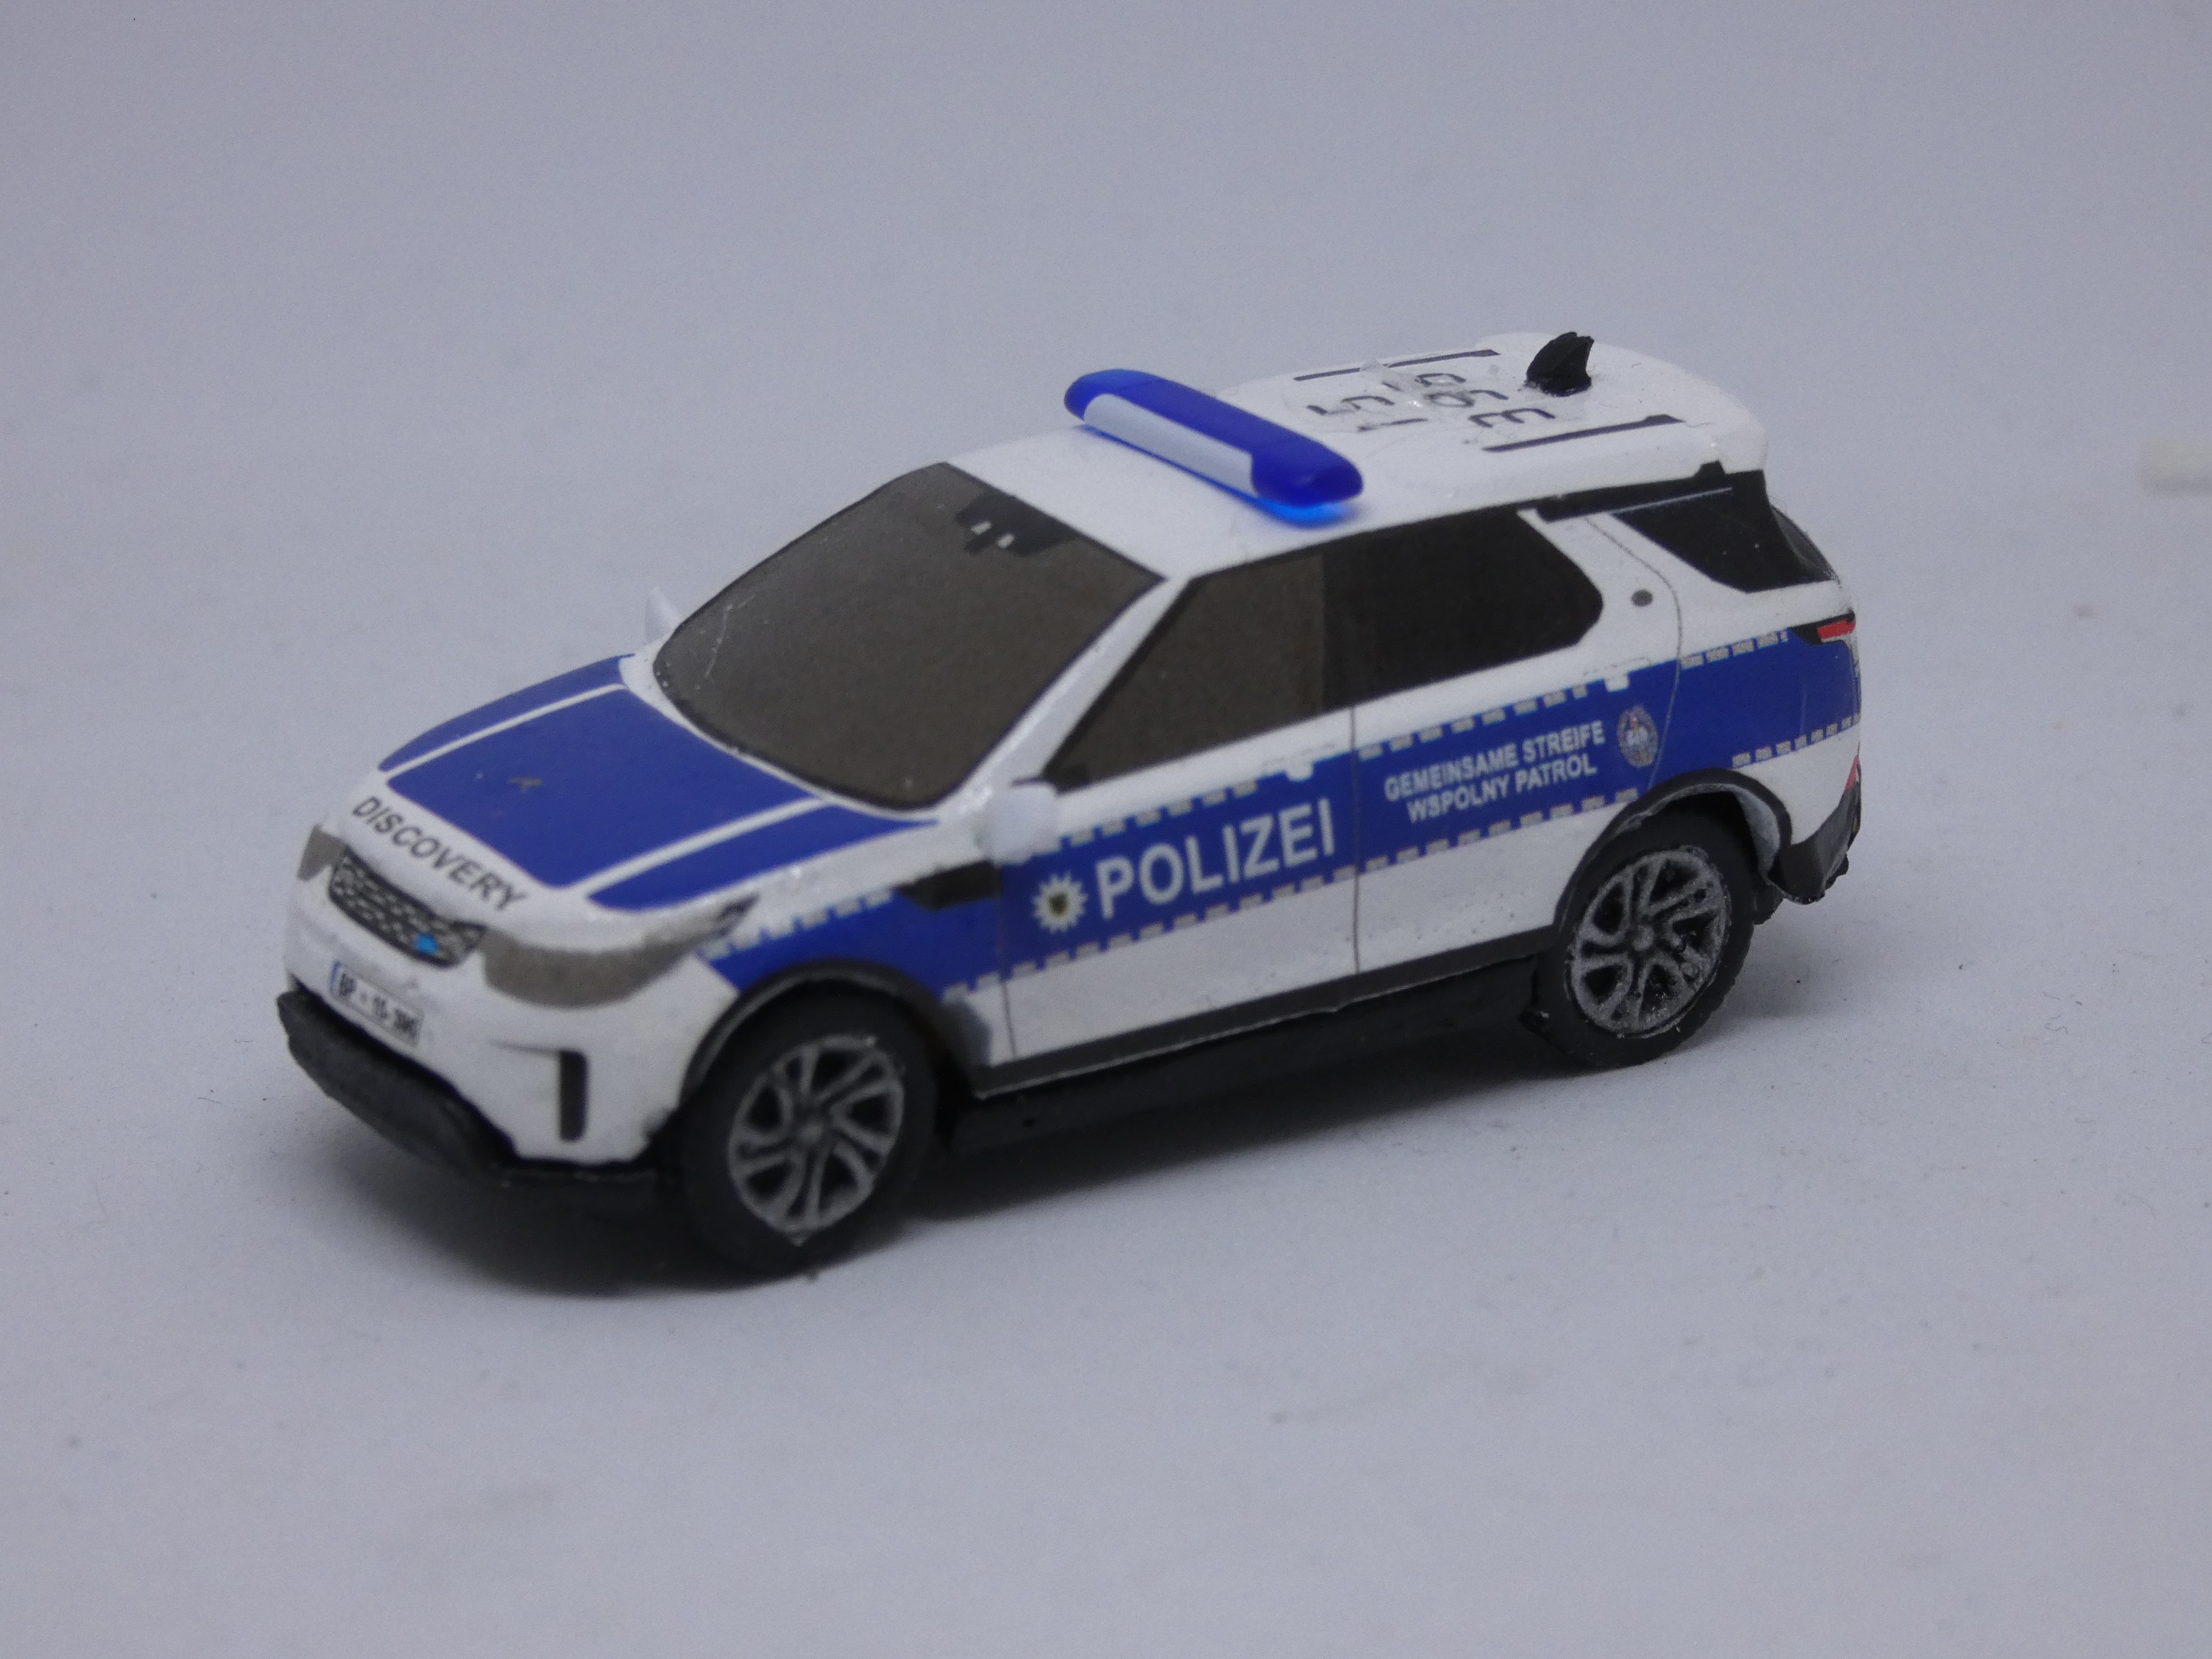 Range Rover Discovery 5 Funkstreifenwagen der Bundespolizei  " gemeinsame deutsch/polnische Streife "